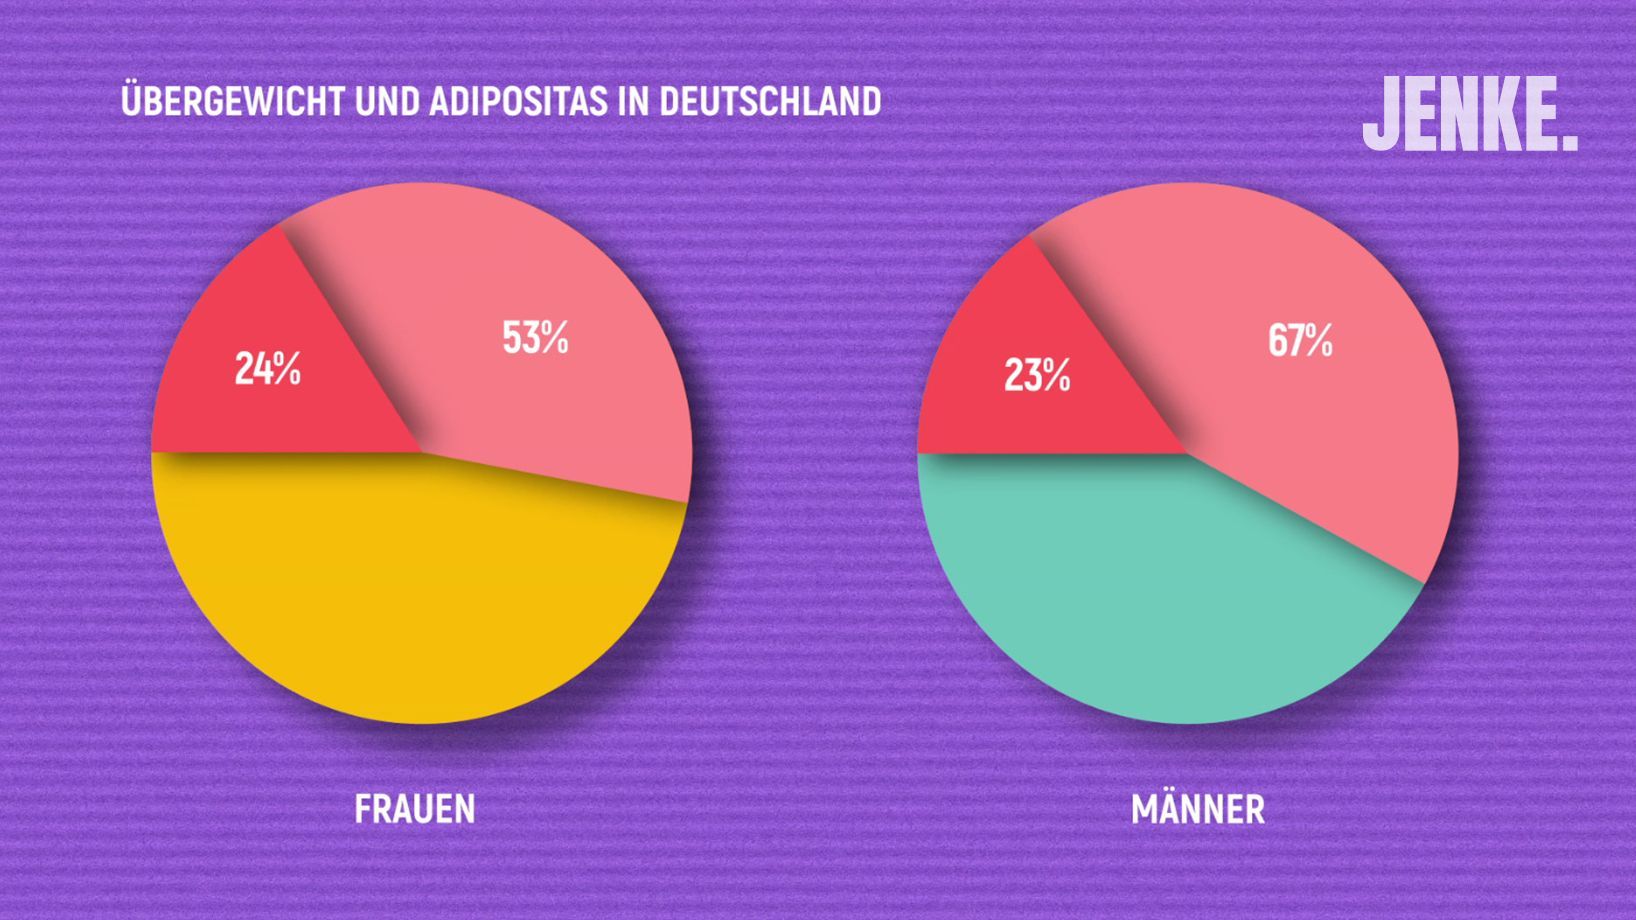 Männer sind von Übergewicht in Deutschland anteilig stärker betroffen als Frauen. Menschen mit Adipositas finden sich in beiden Gruppen ungefähr gleich häufig.